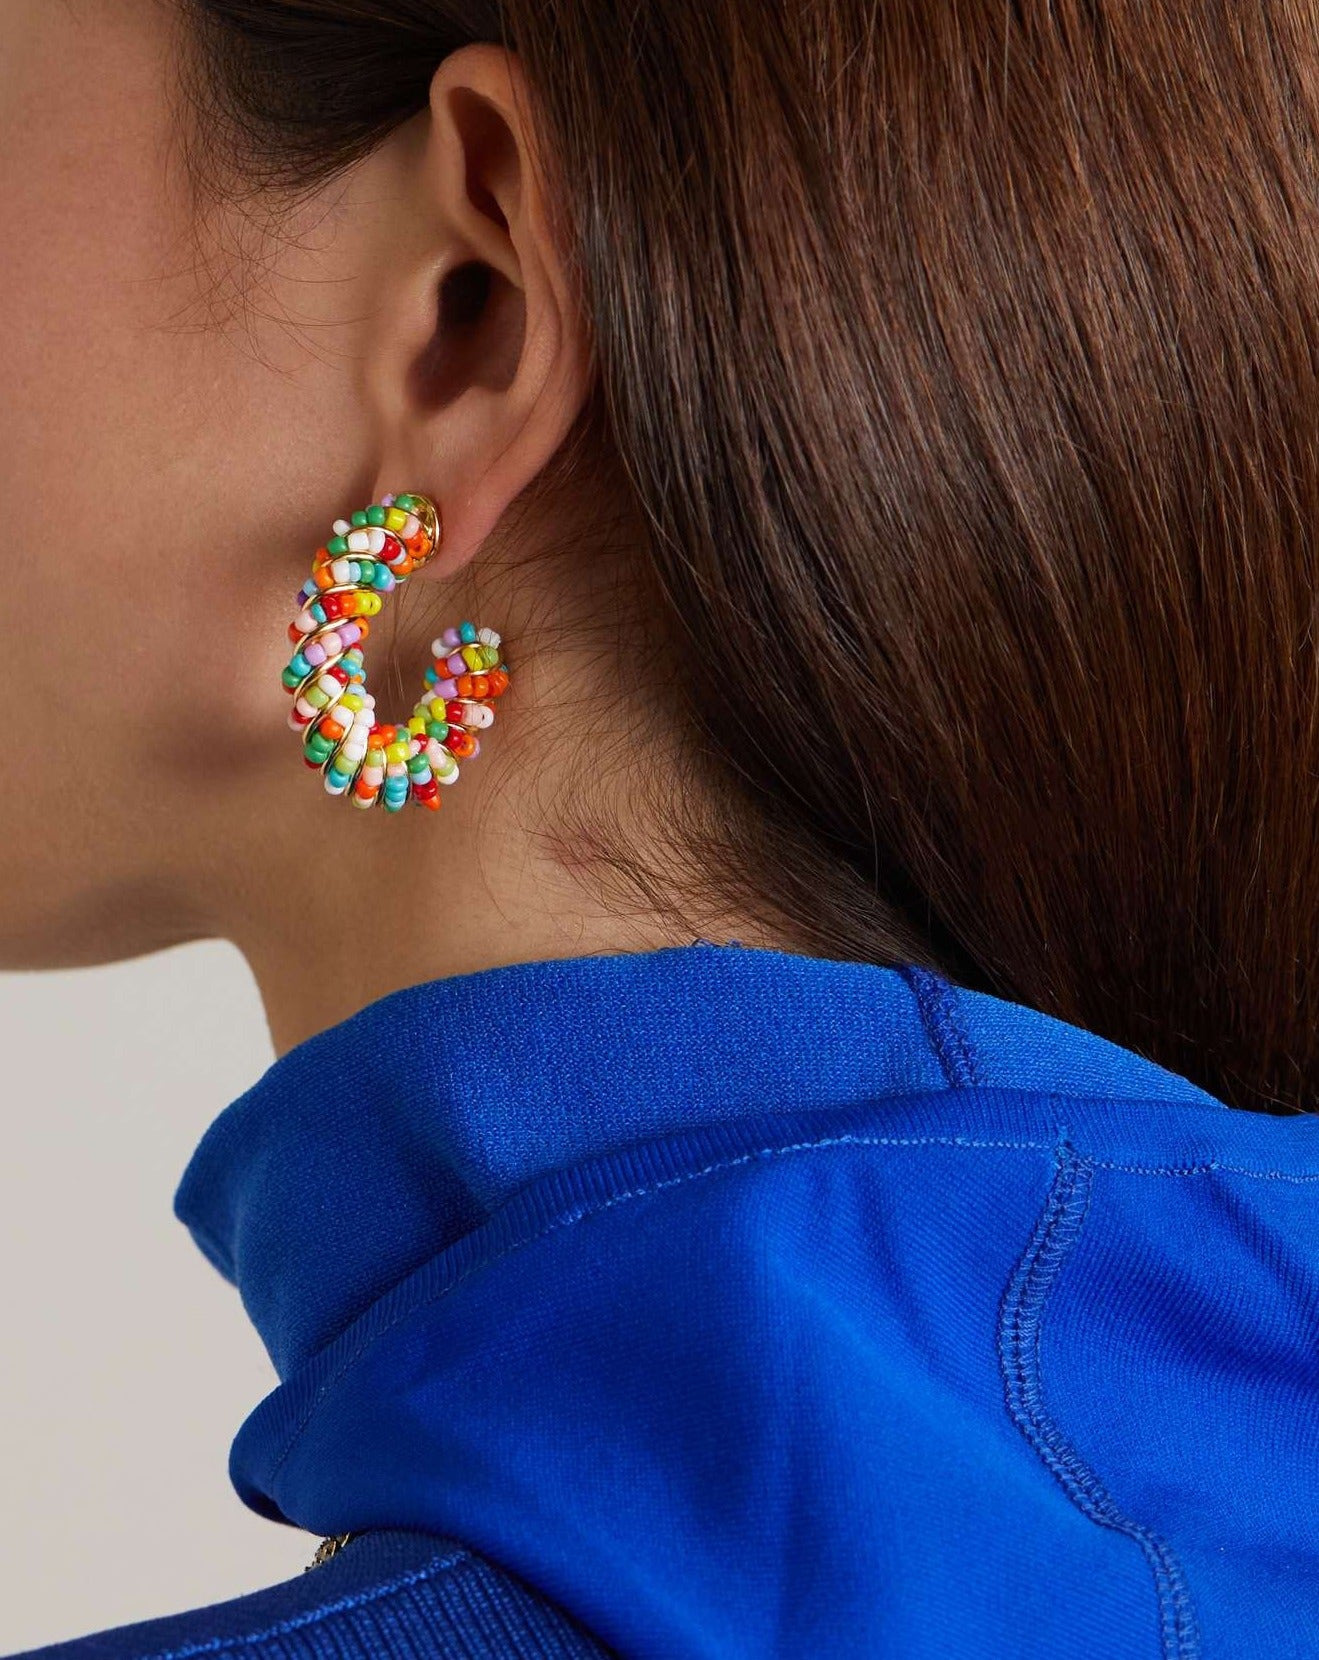 Tutti Frutti earrings by Crystal Haze